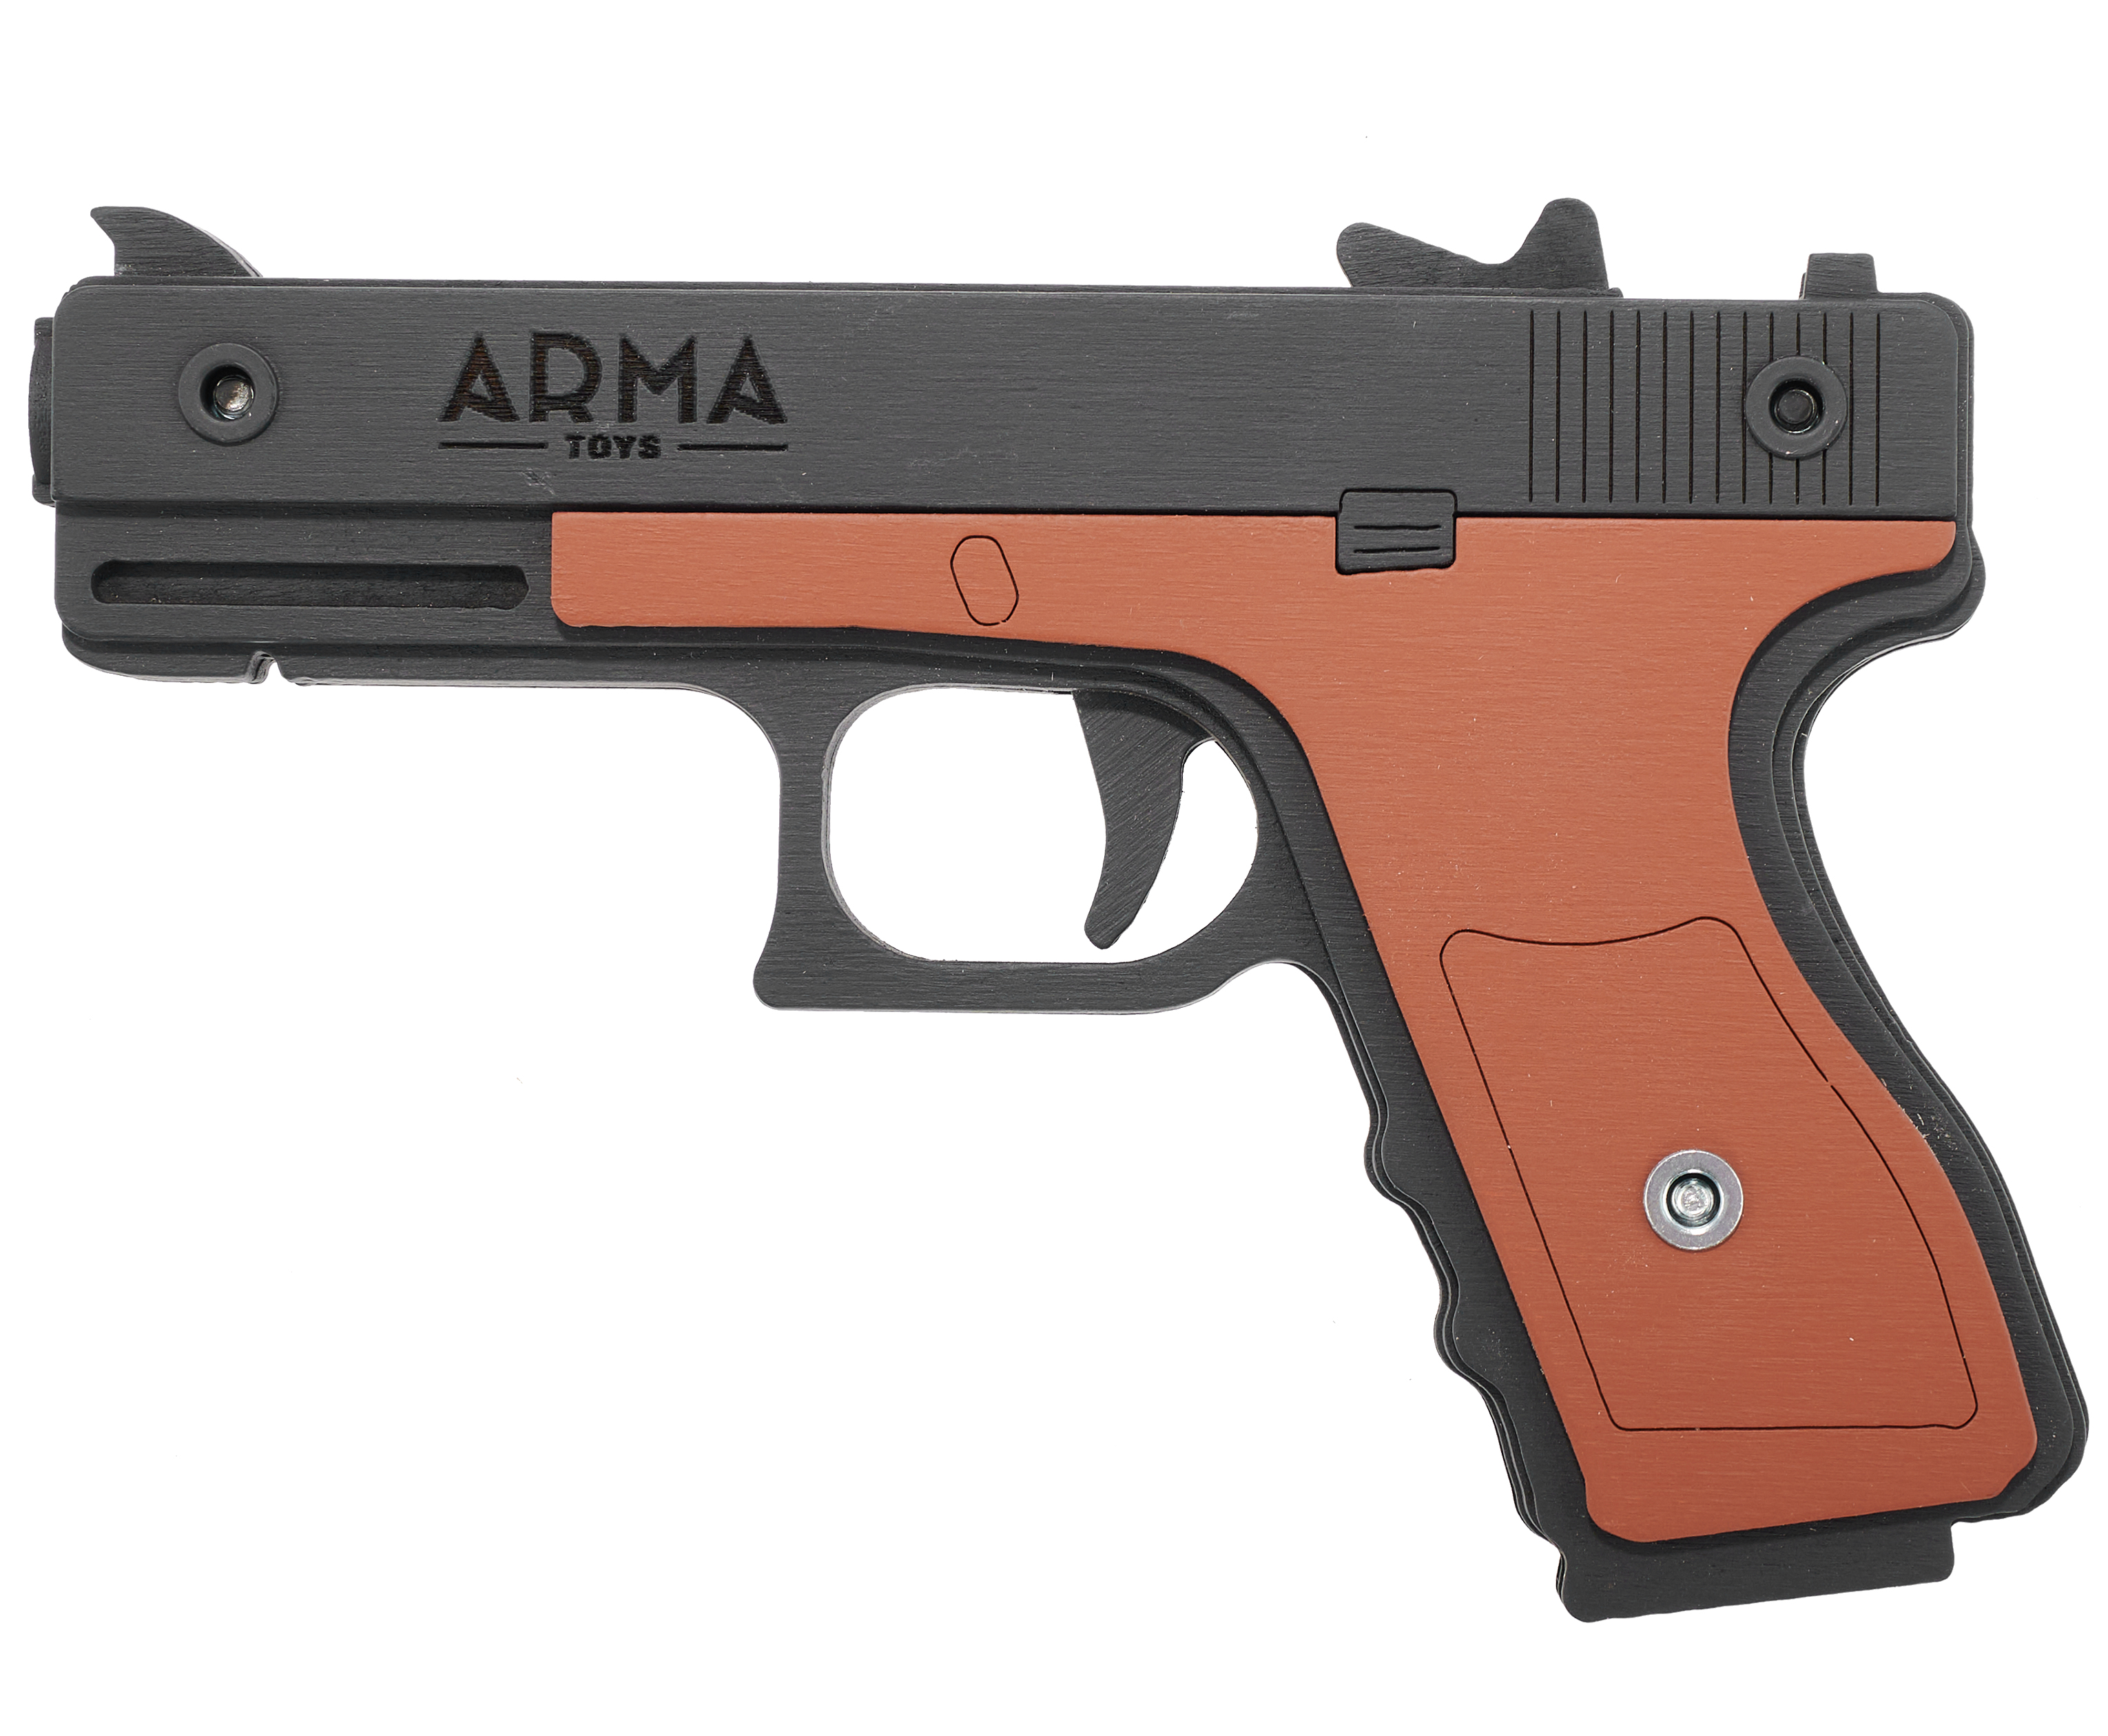 Резинкострел игрушечный Arma toys пистолет Glock макет, AT013K, окрашенный резинкострел arma toys пистолет стечкина макет апс at009k окрашенный